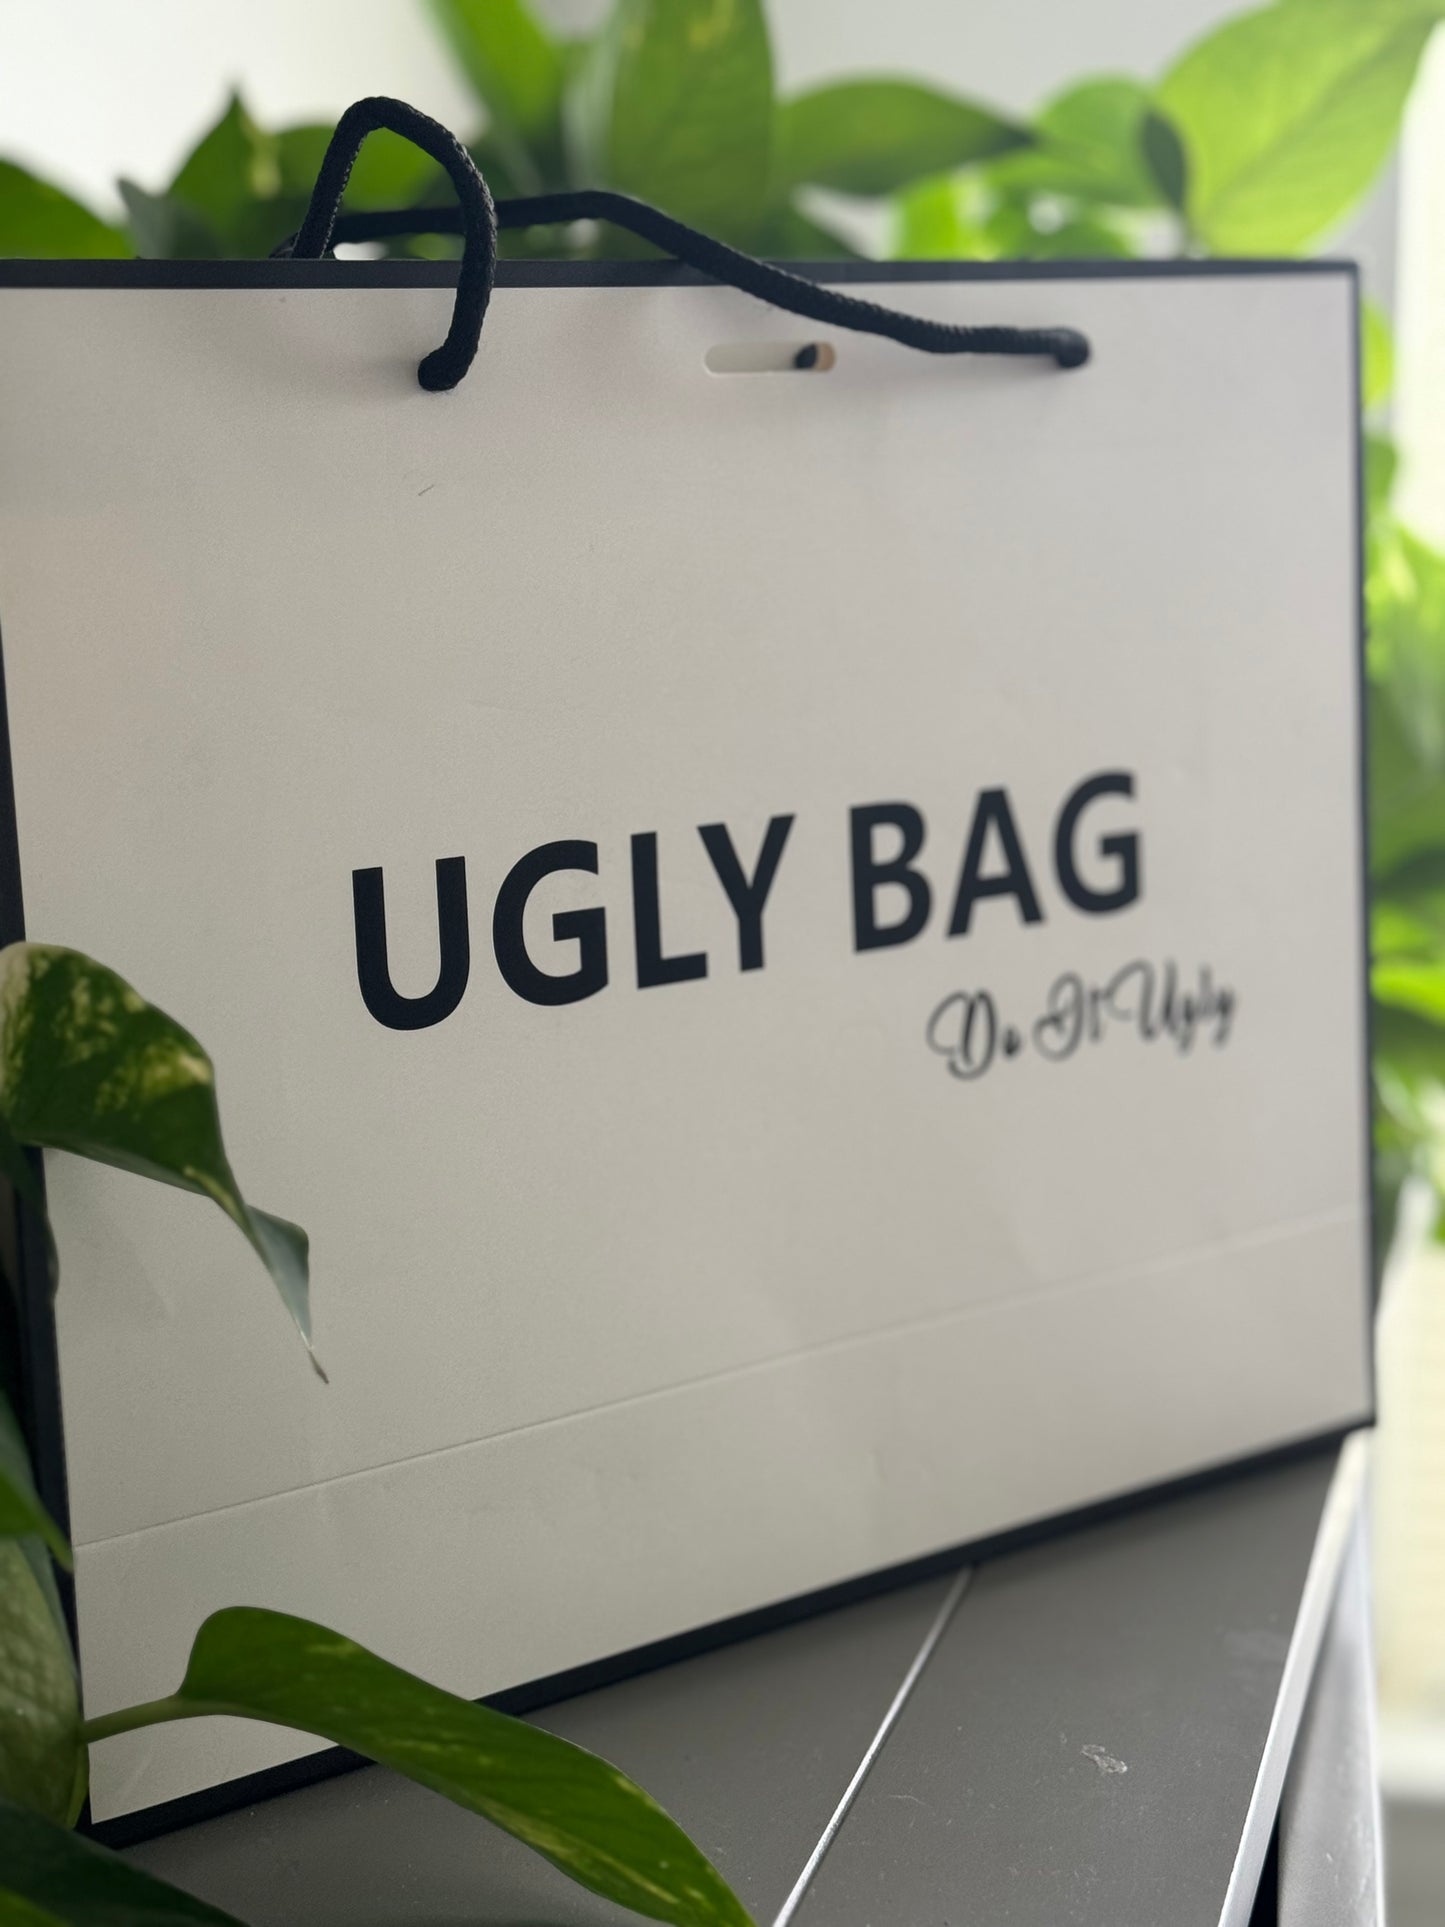 The Ugly Bag Shopping Bag